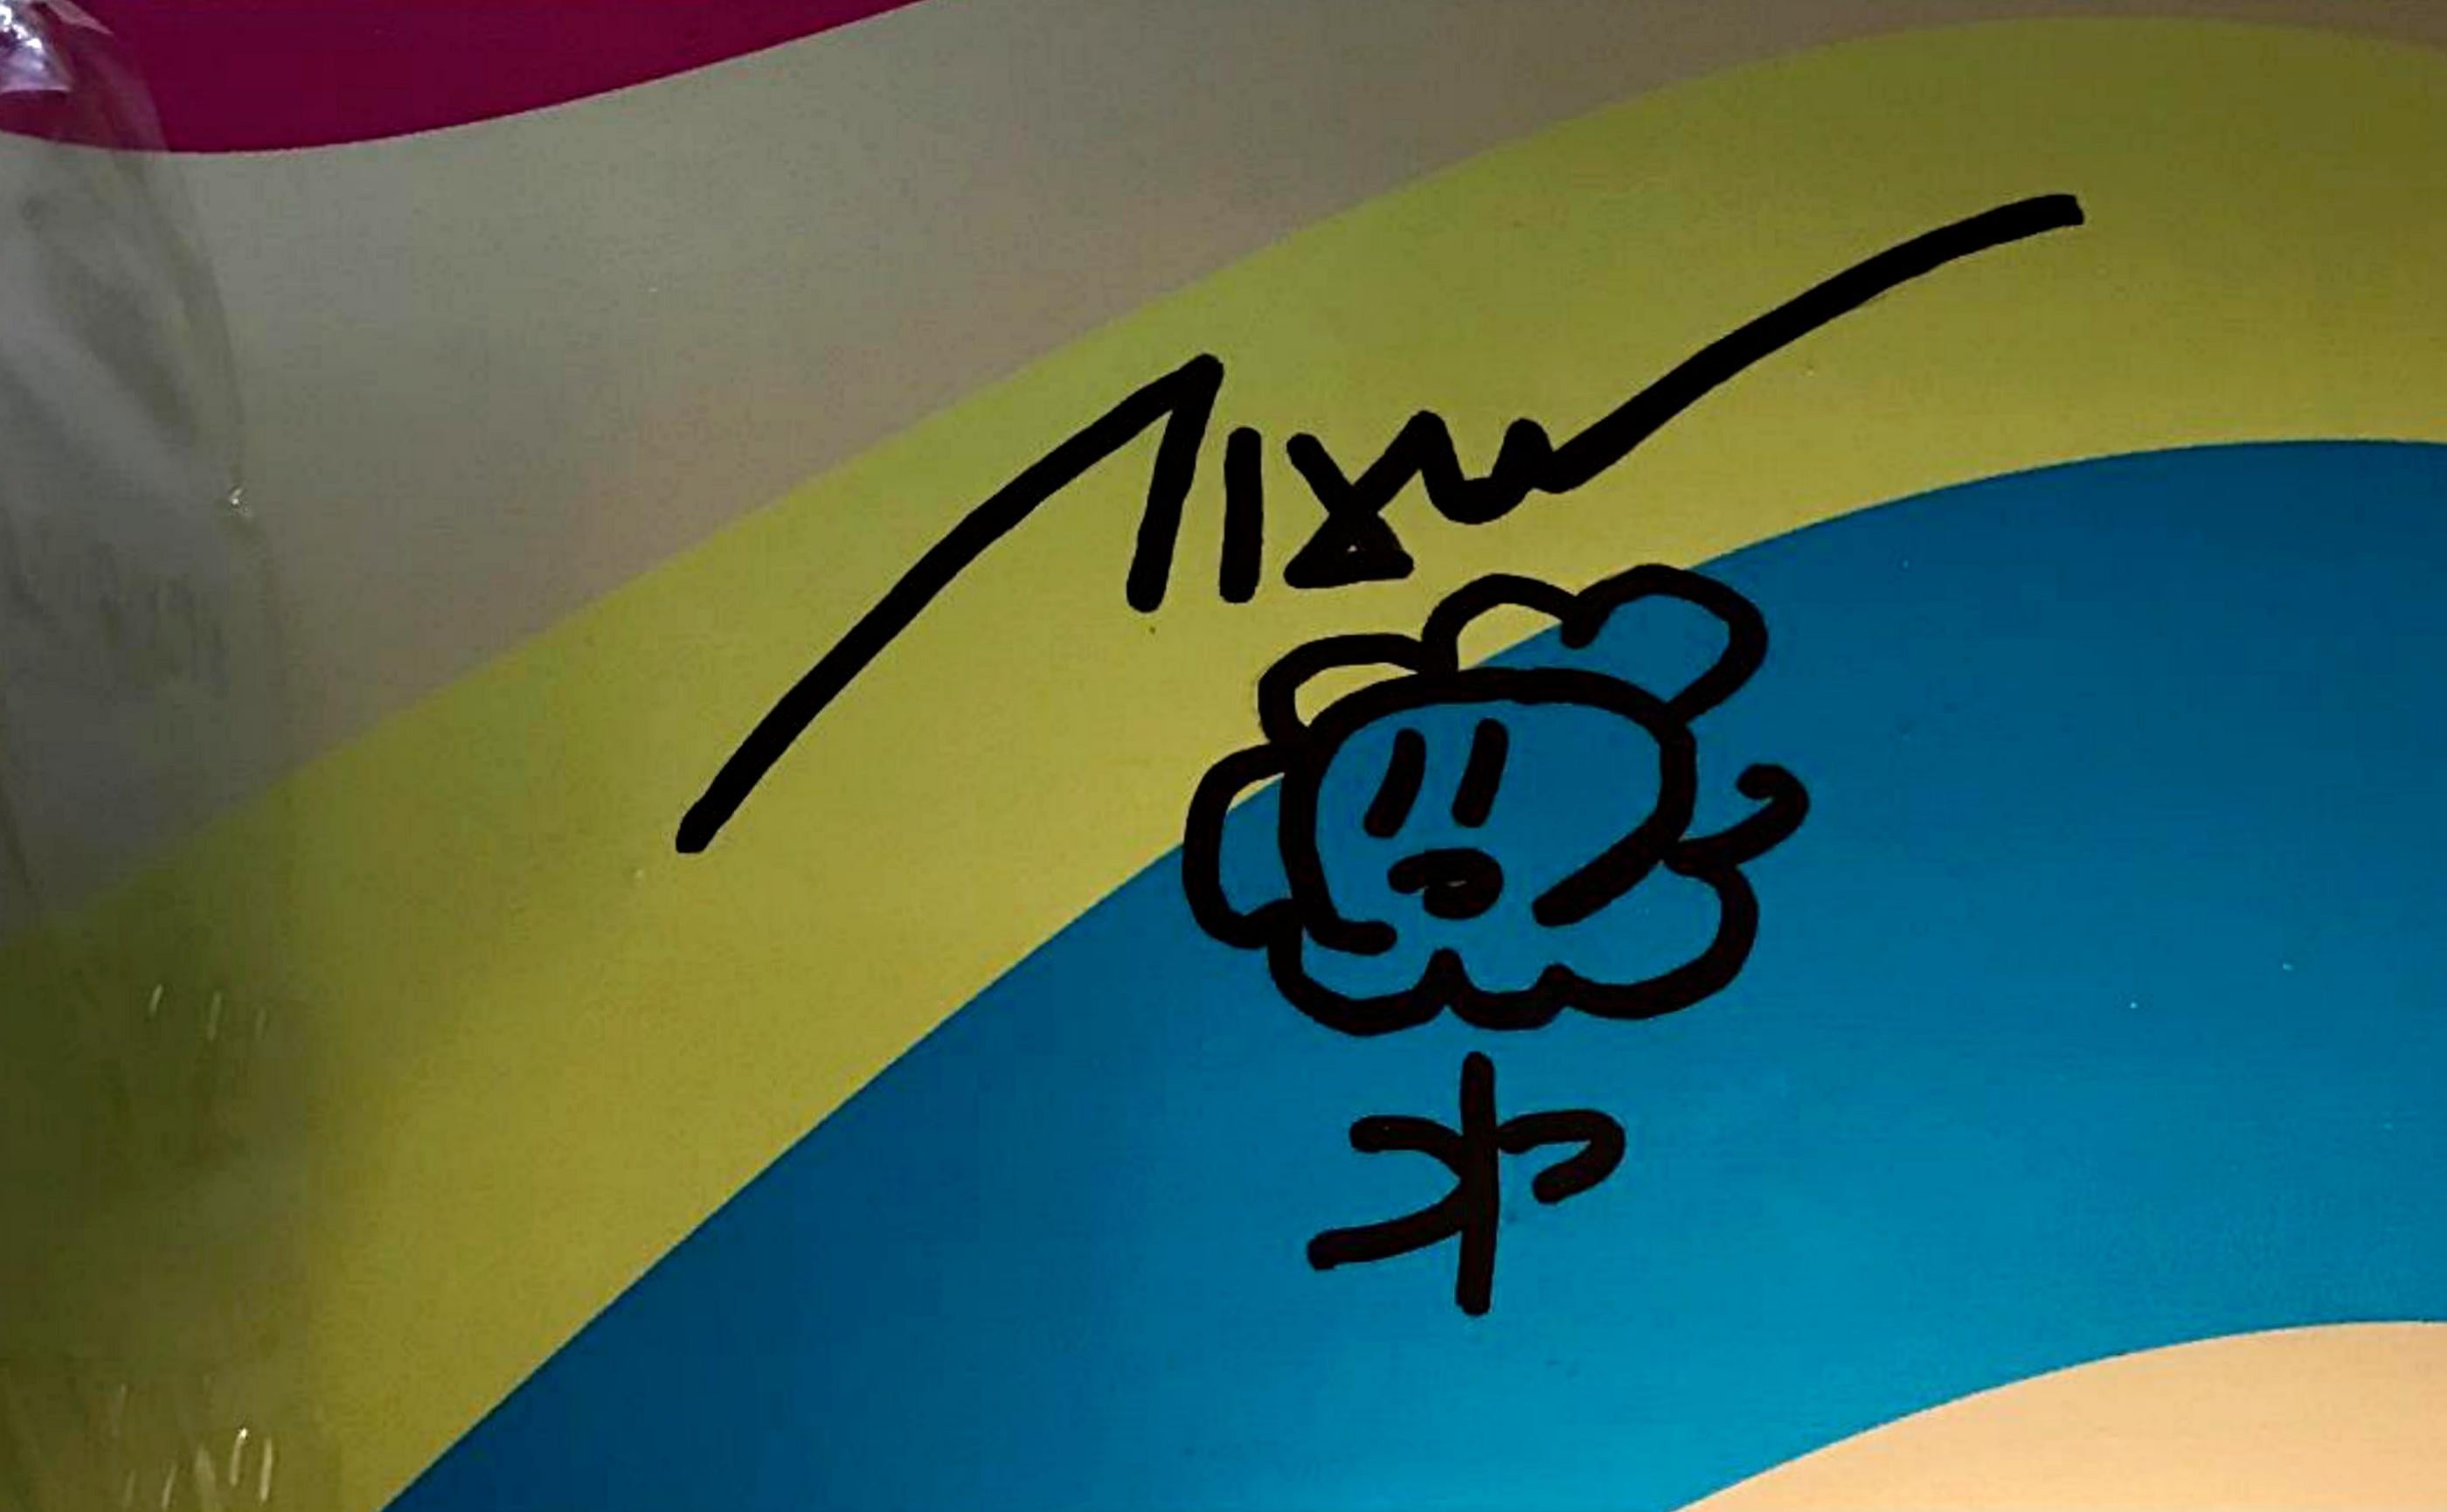 Takashi Murakami
Dessin original signé à la main d'une fleur sur un skateboard en édition limitée, 2017
Dessin de fleur unique au marqueur sur un skateboard. Signé par Murakami
Dessin de fleur réalisé au marqueur et audacieusement signé par